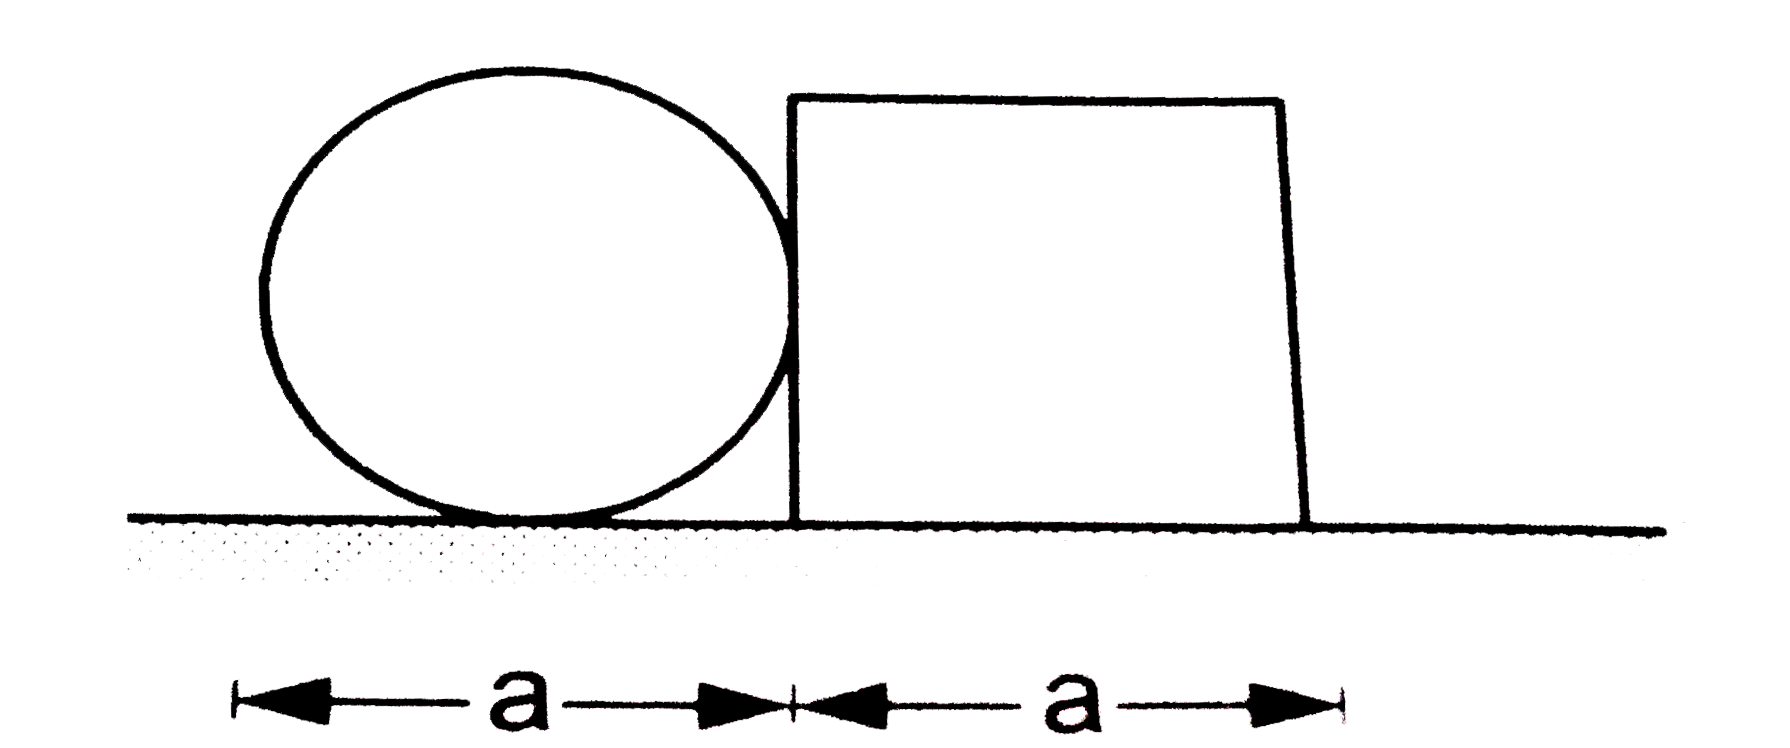 d व्यास की एक वृताकार डिस्क, d लंबाई की एक वर्गाकार प्लेट के साथ सटाकर एक समतल में रखी है | दोनों के घनत्व तथा  मोटाइयाँ बराबर है | इस समूह का द्रव्यमान केंद्र होगा